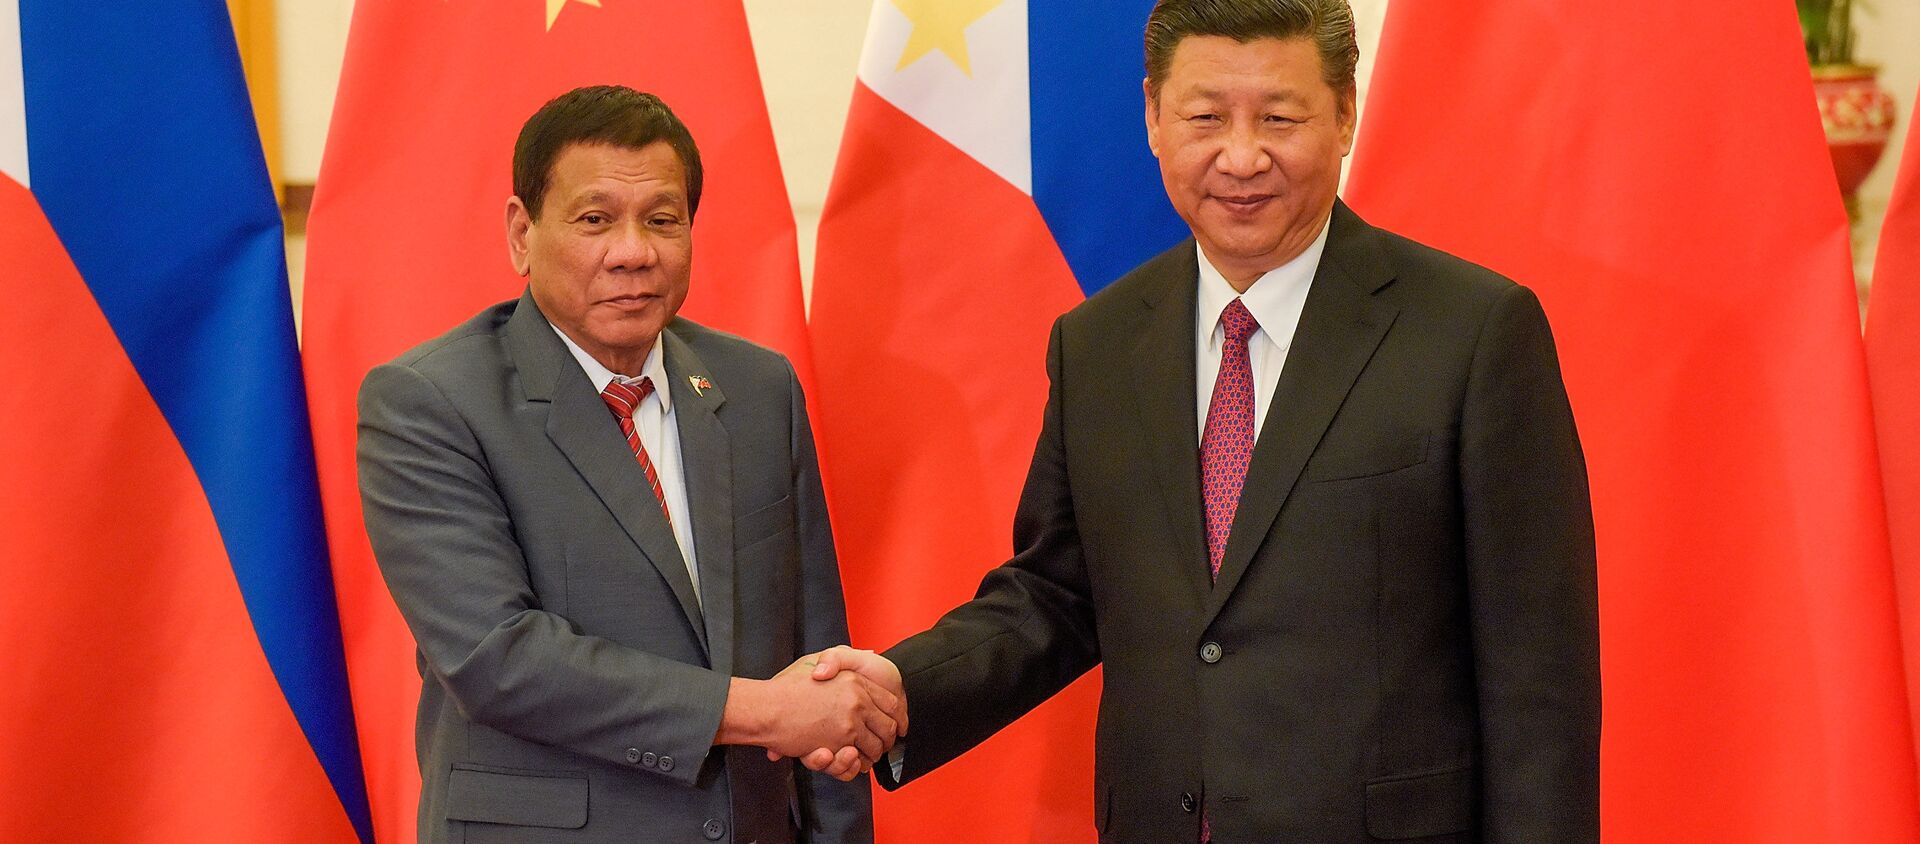 Tổng thống Philippines Rodrigo Duterte và Chủ tịch Trung Quốc Tập Cận Bình  - Sputnik Việt Nam, 1920, 23.08.2019